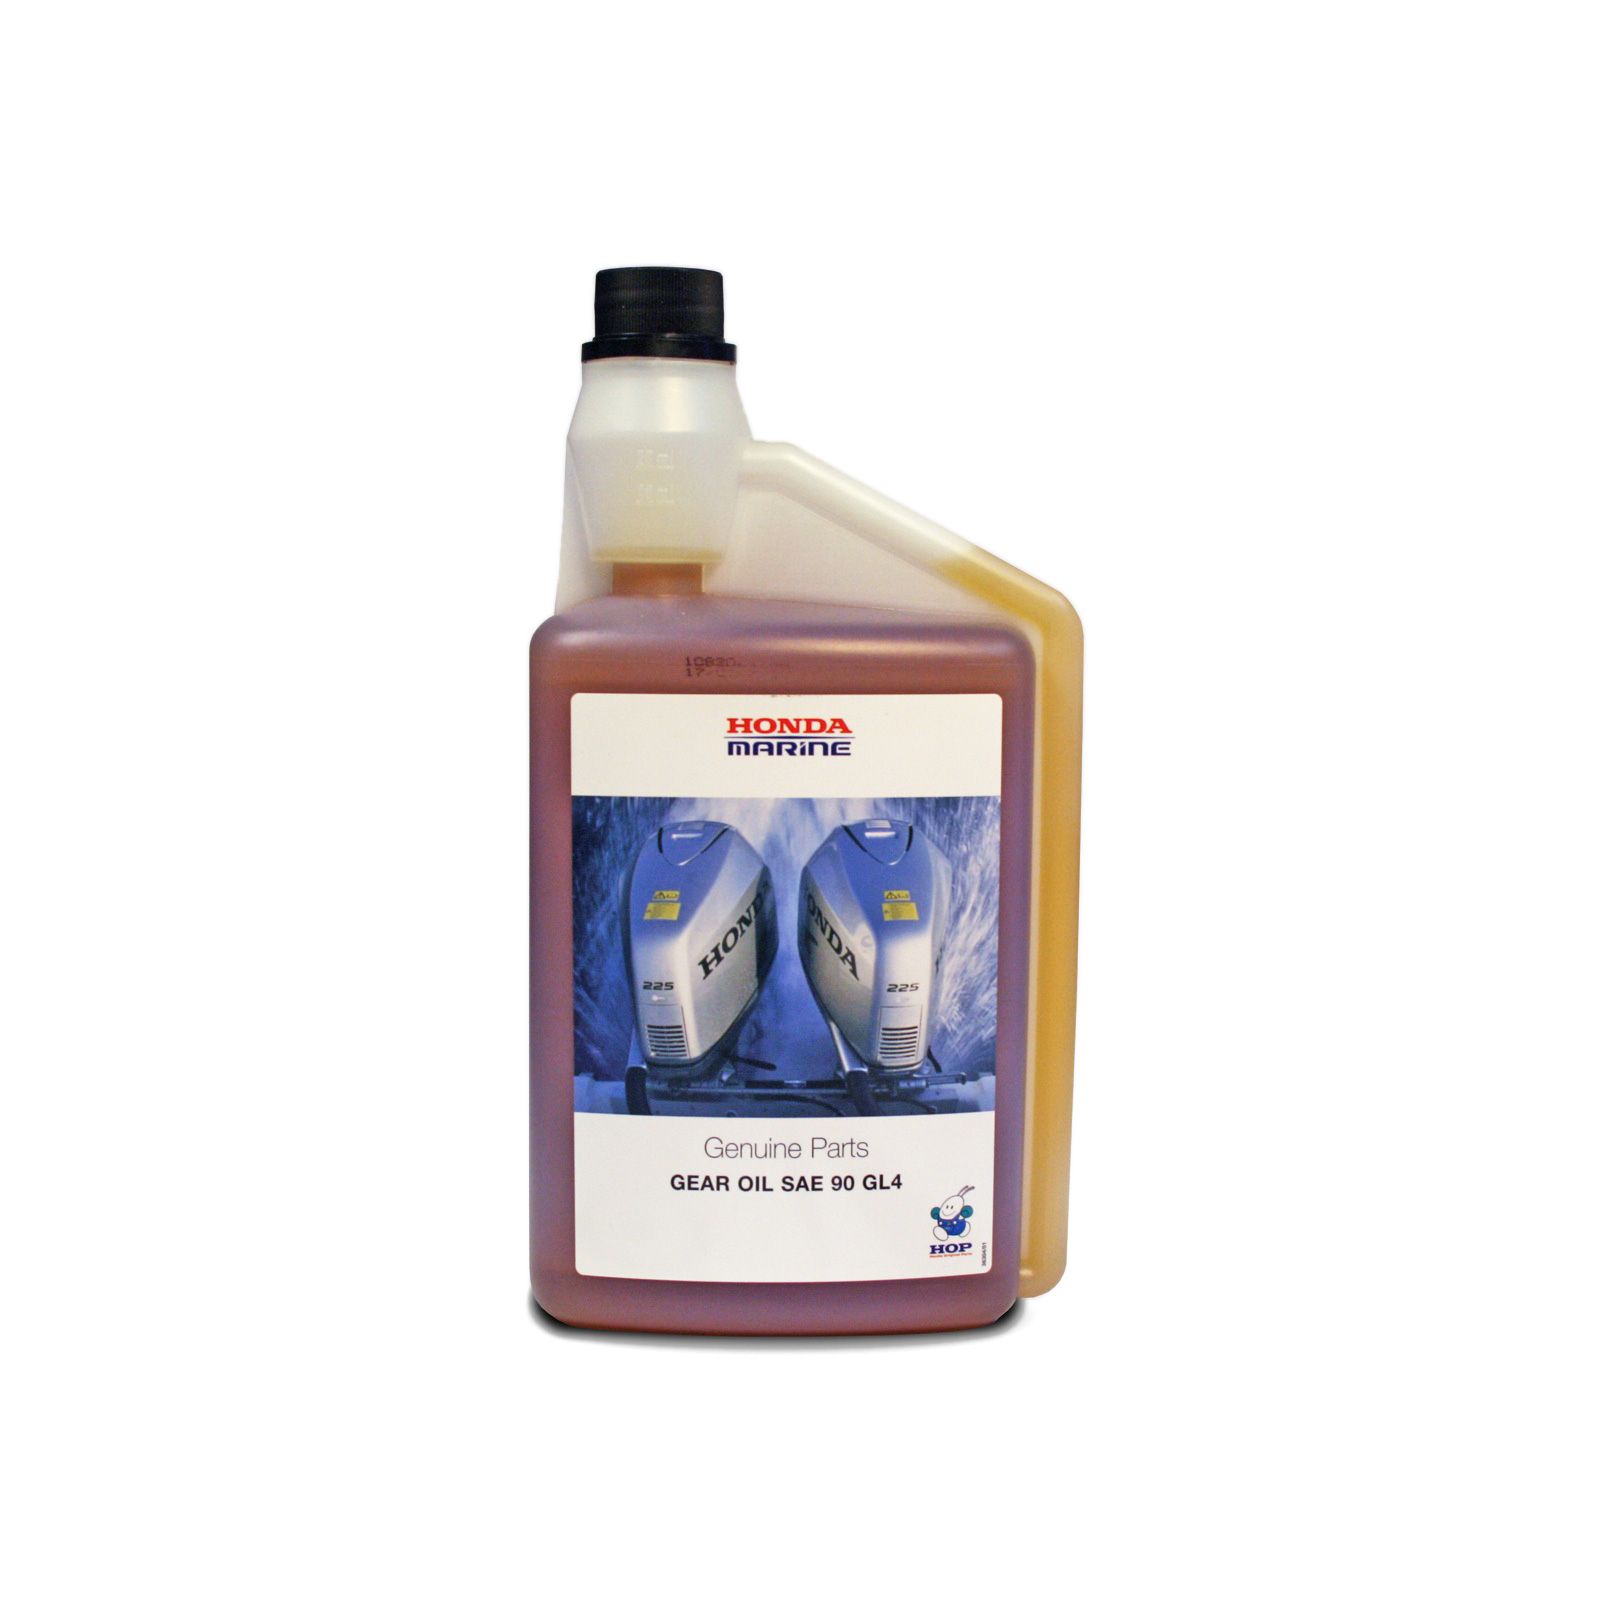 Морское масло для зубчатых передач — SAE 90 GL4, 12 бутылок объемом 1 литр